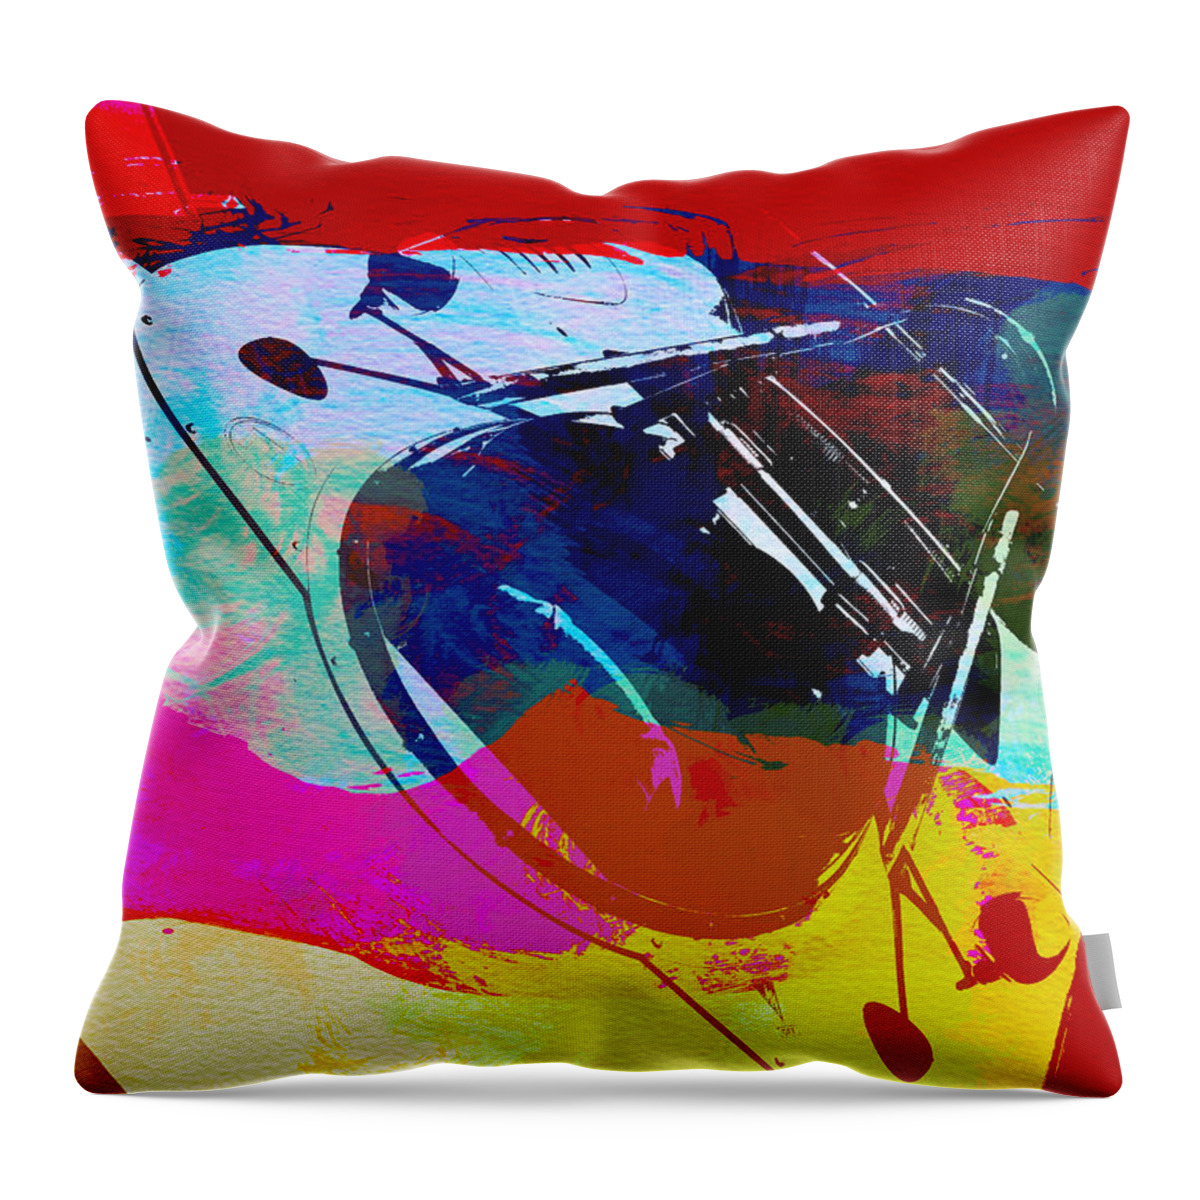 Naxart Throw Pillow featuring the digital art Porsche Watercolor by Naxart Studio